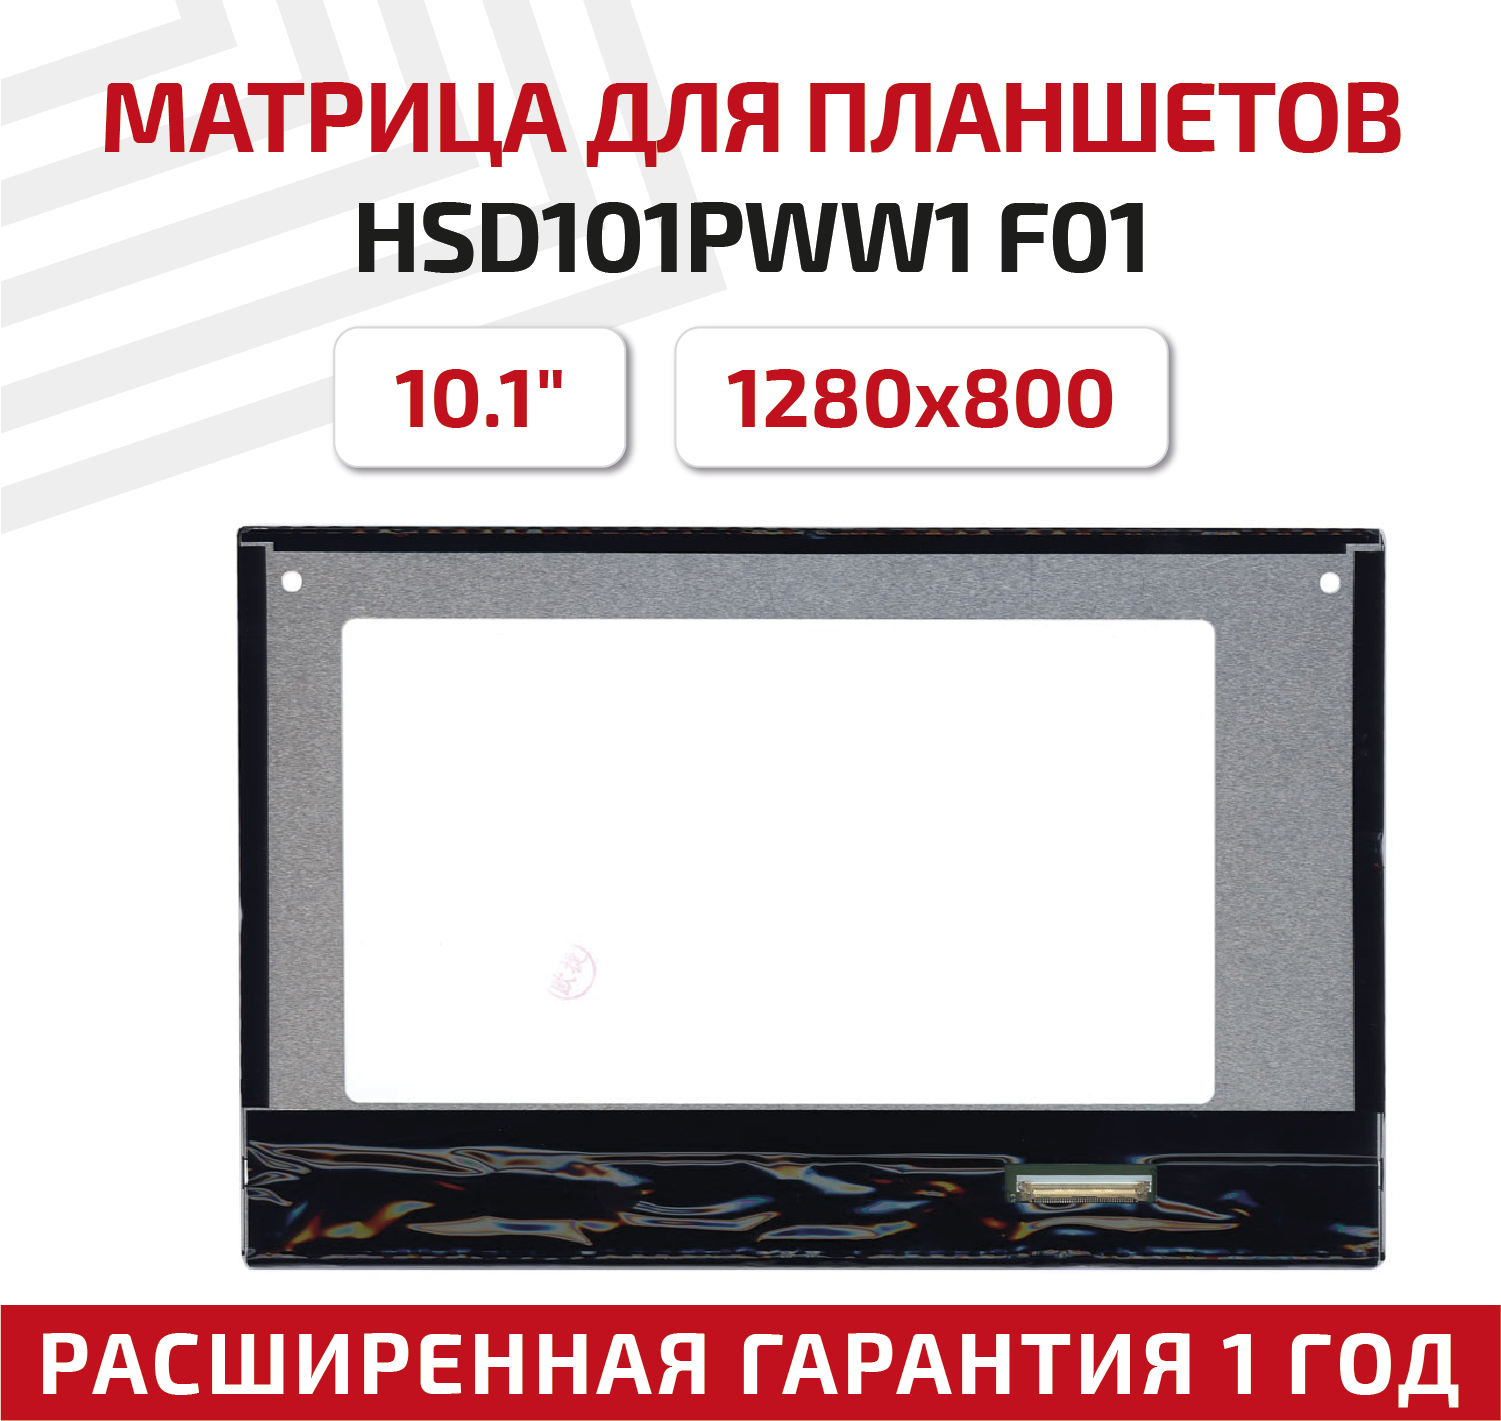 Матрица для планшета HSD101PWW1 F01 10.1" 1280x800 светодиодная (LED) глянцевая